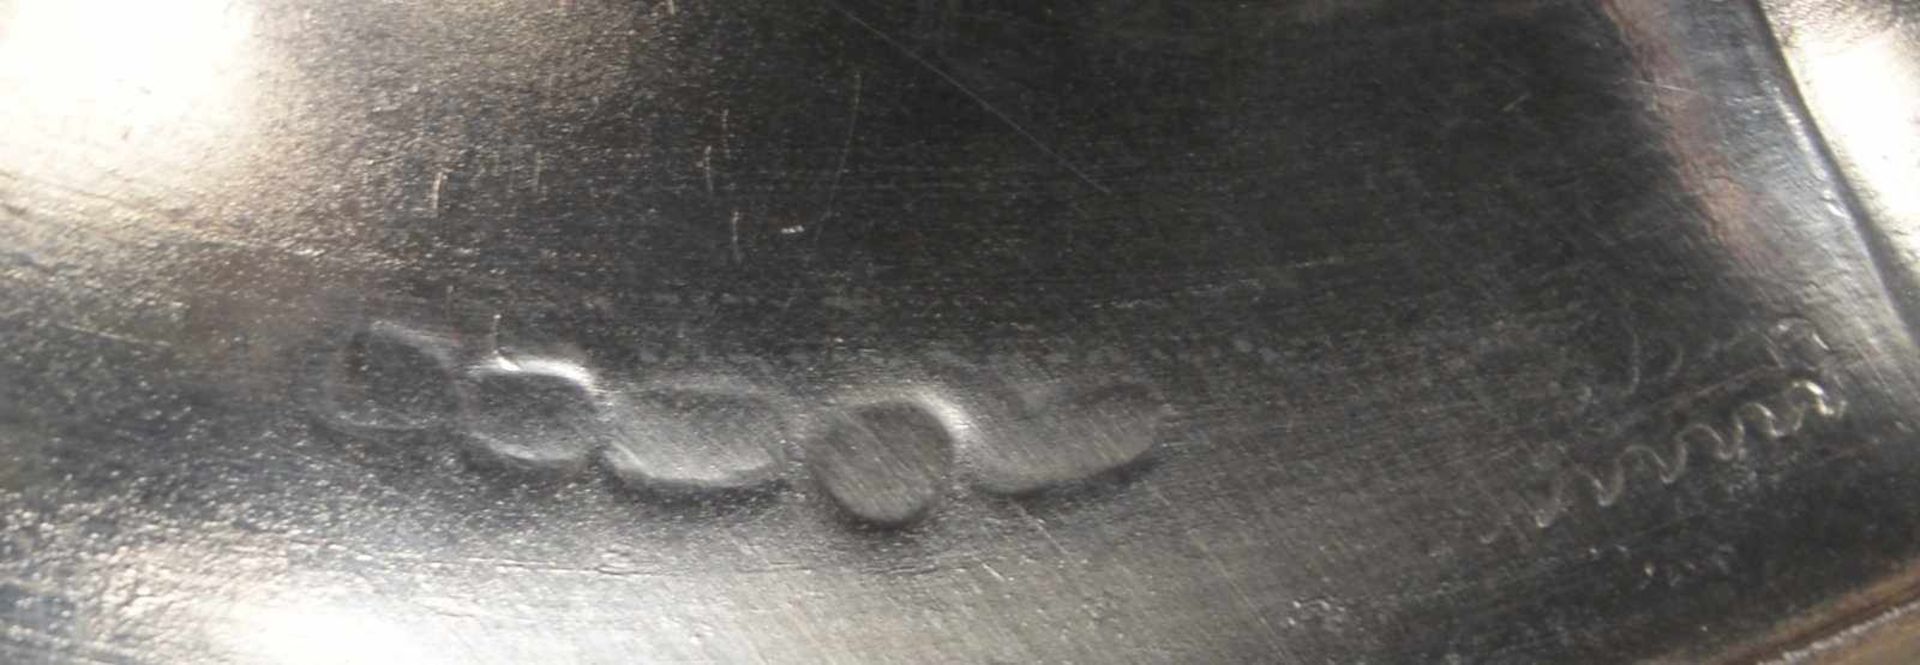 Fußschale (Schweden), 830 Silber, mehrfach punziert; Höhe 8 cm, Durchmesser Ø 22 cm, Gewicht 338 g - Bild 3 aus 3